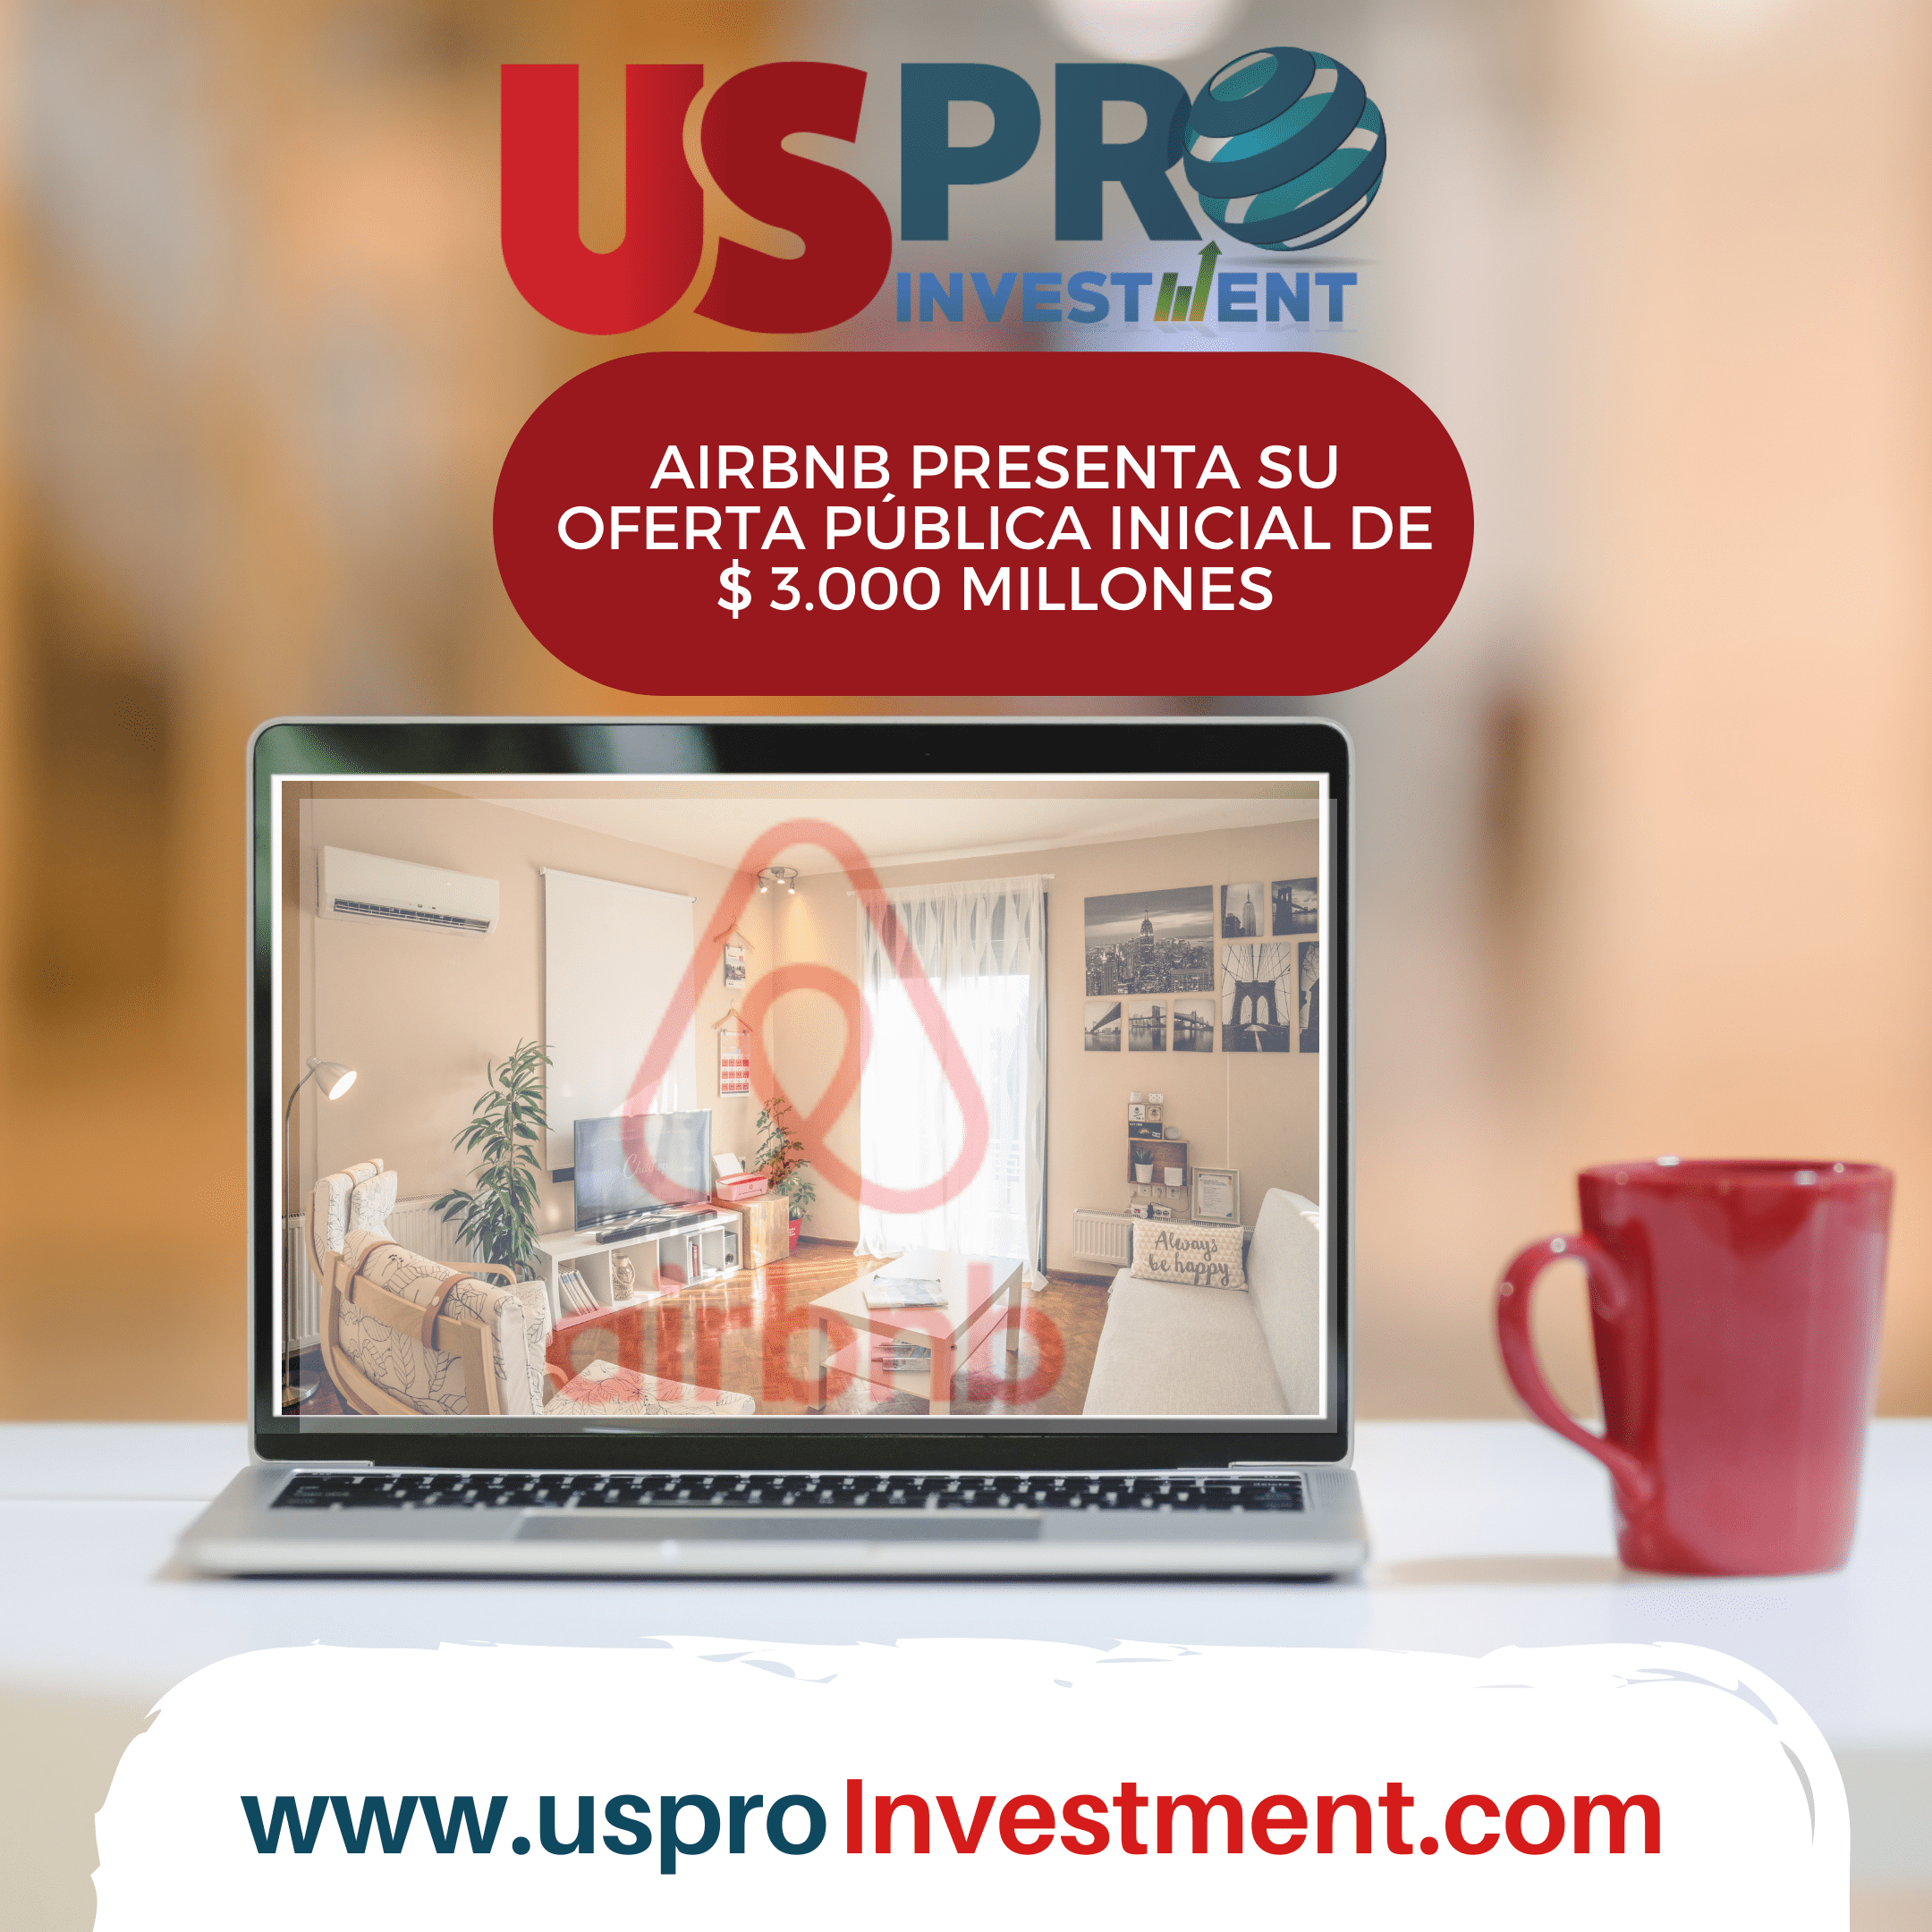 Us Pro Investment Airbnb presenta su oferta pública inicial de $ 3.000 millones